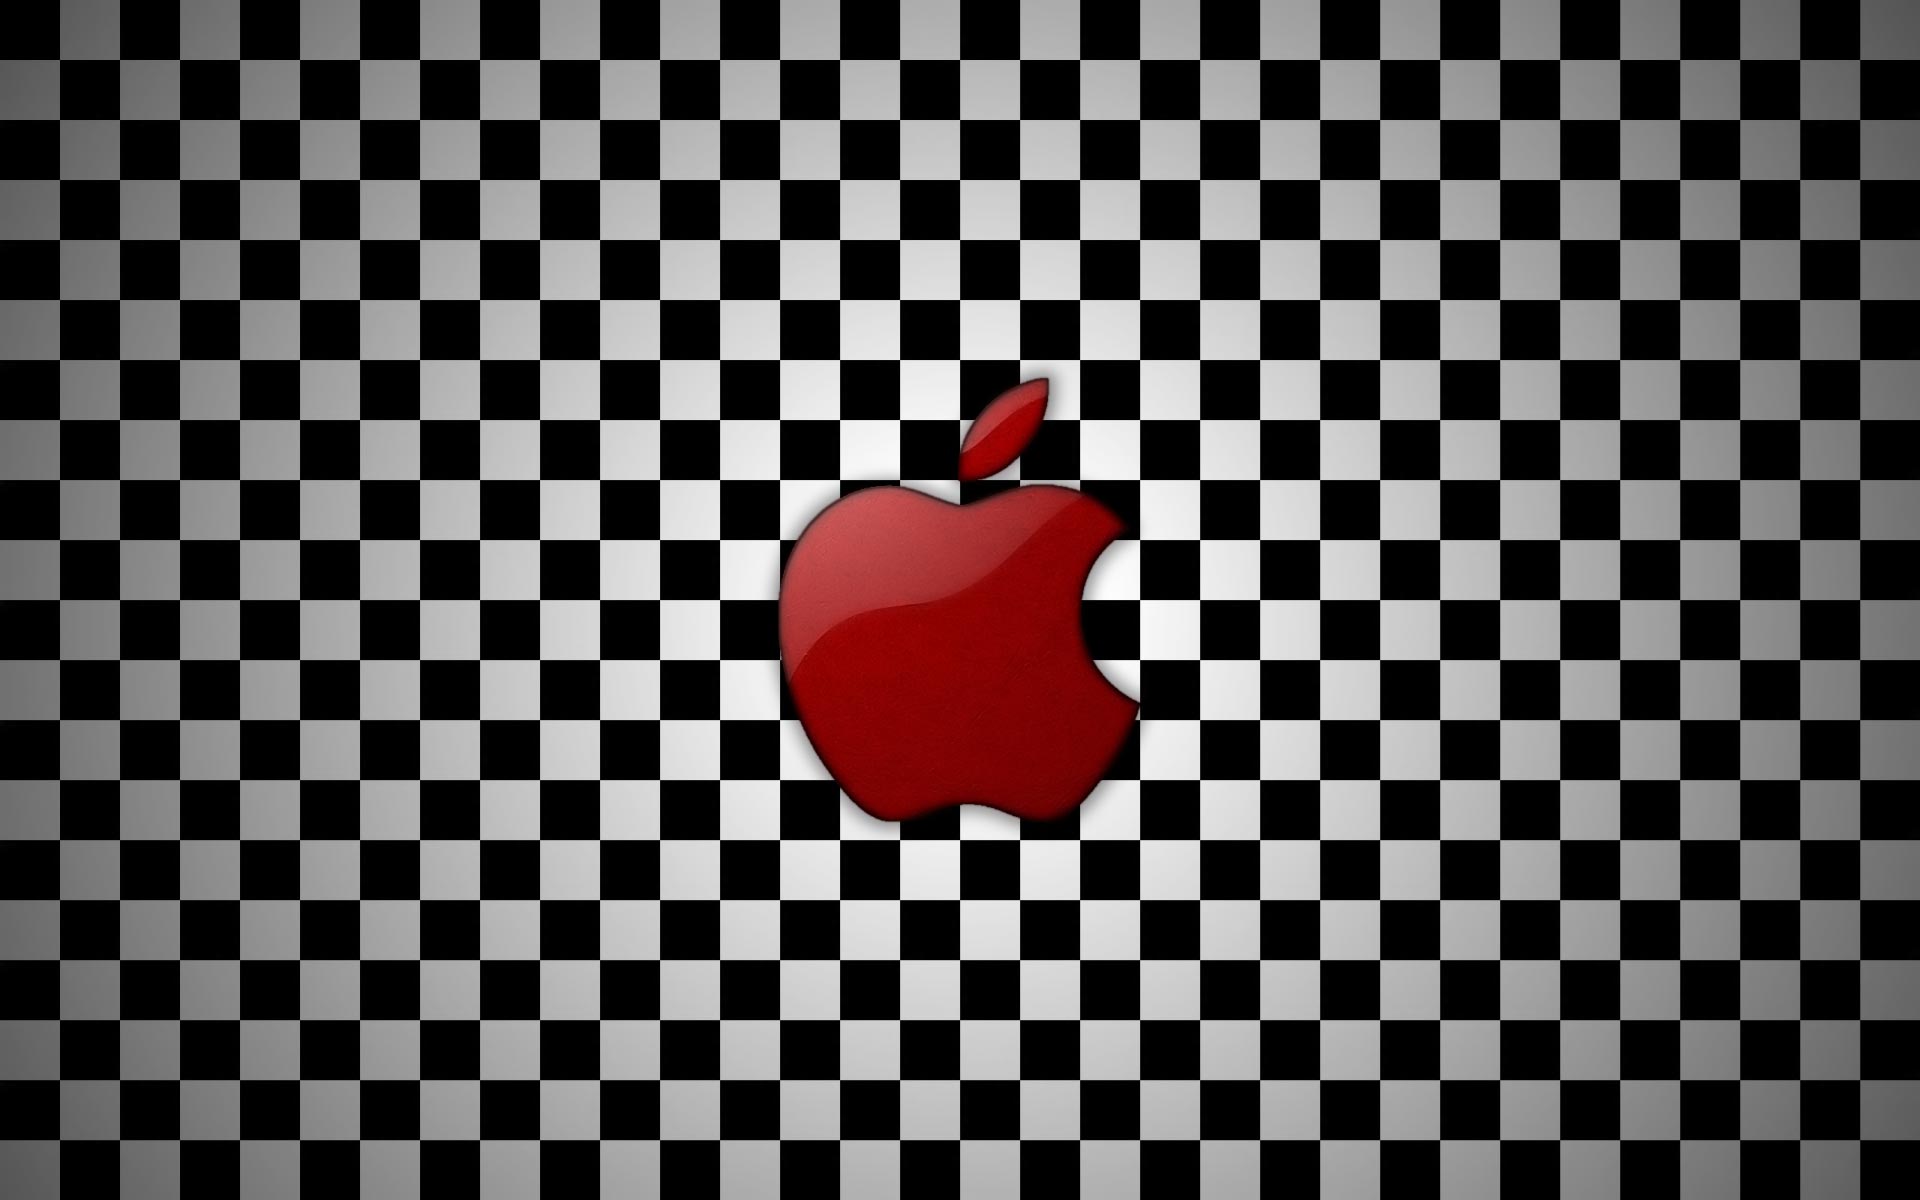 Checkerboard Wallpaper HD | PixelsTalk.Net